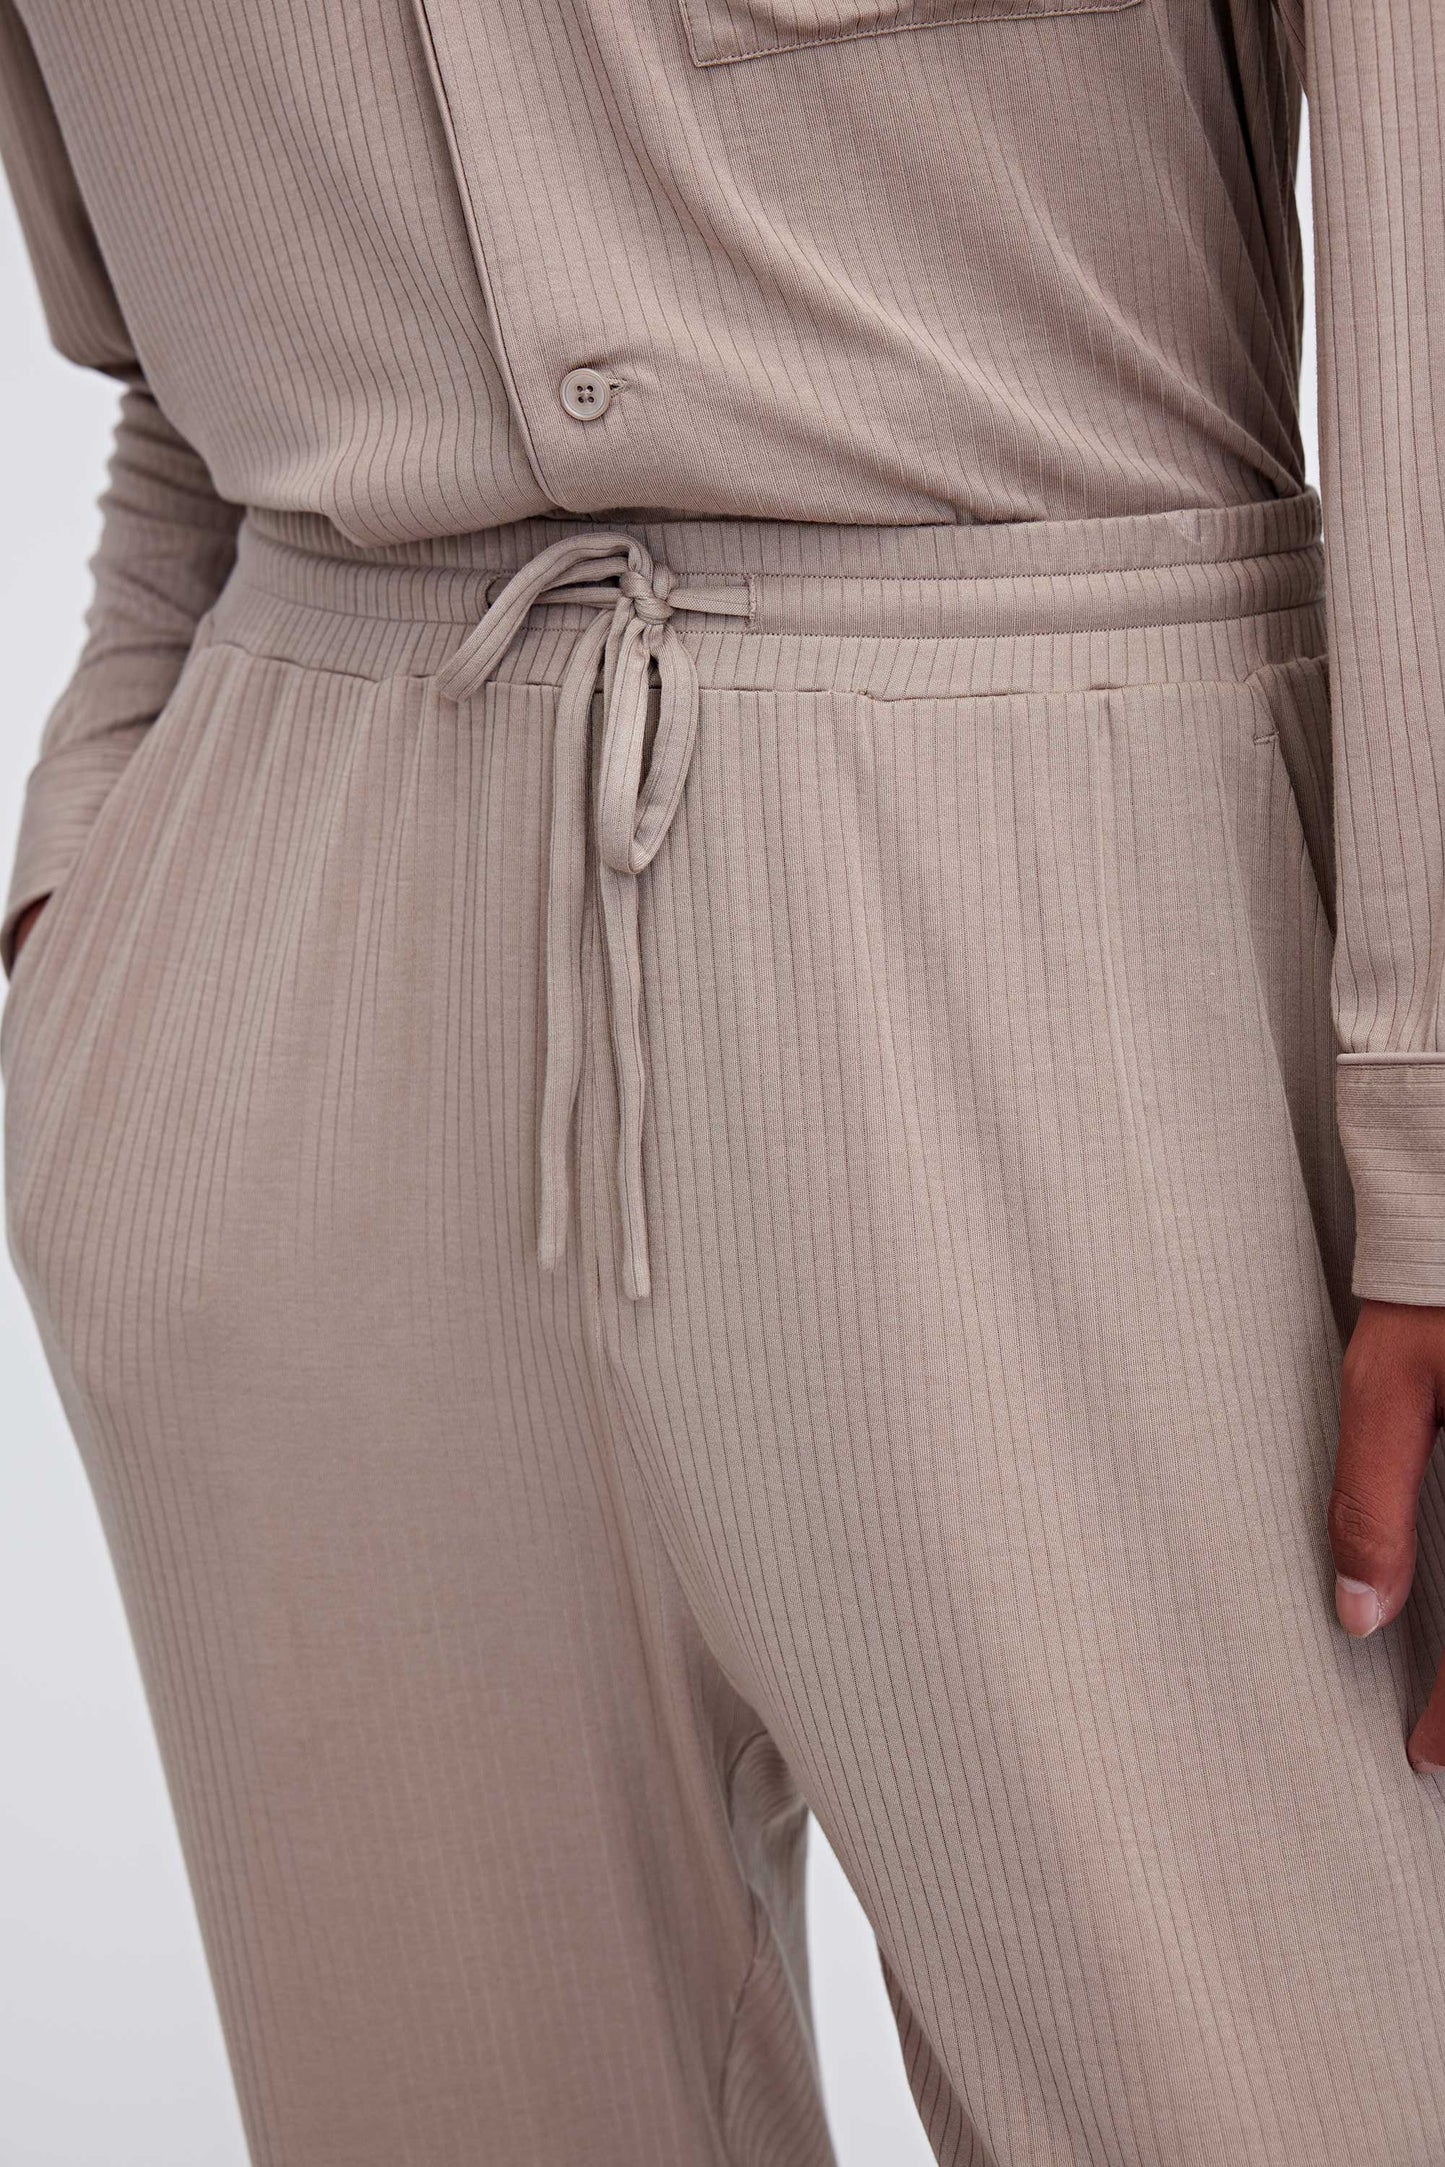 close up of tan pajama pants